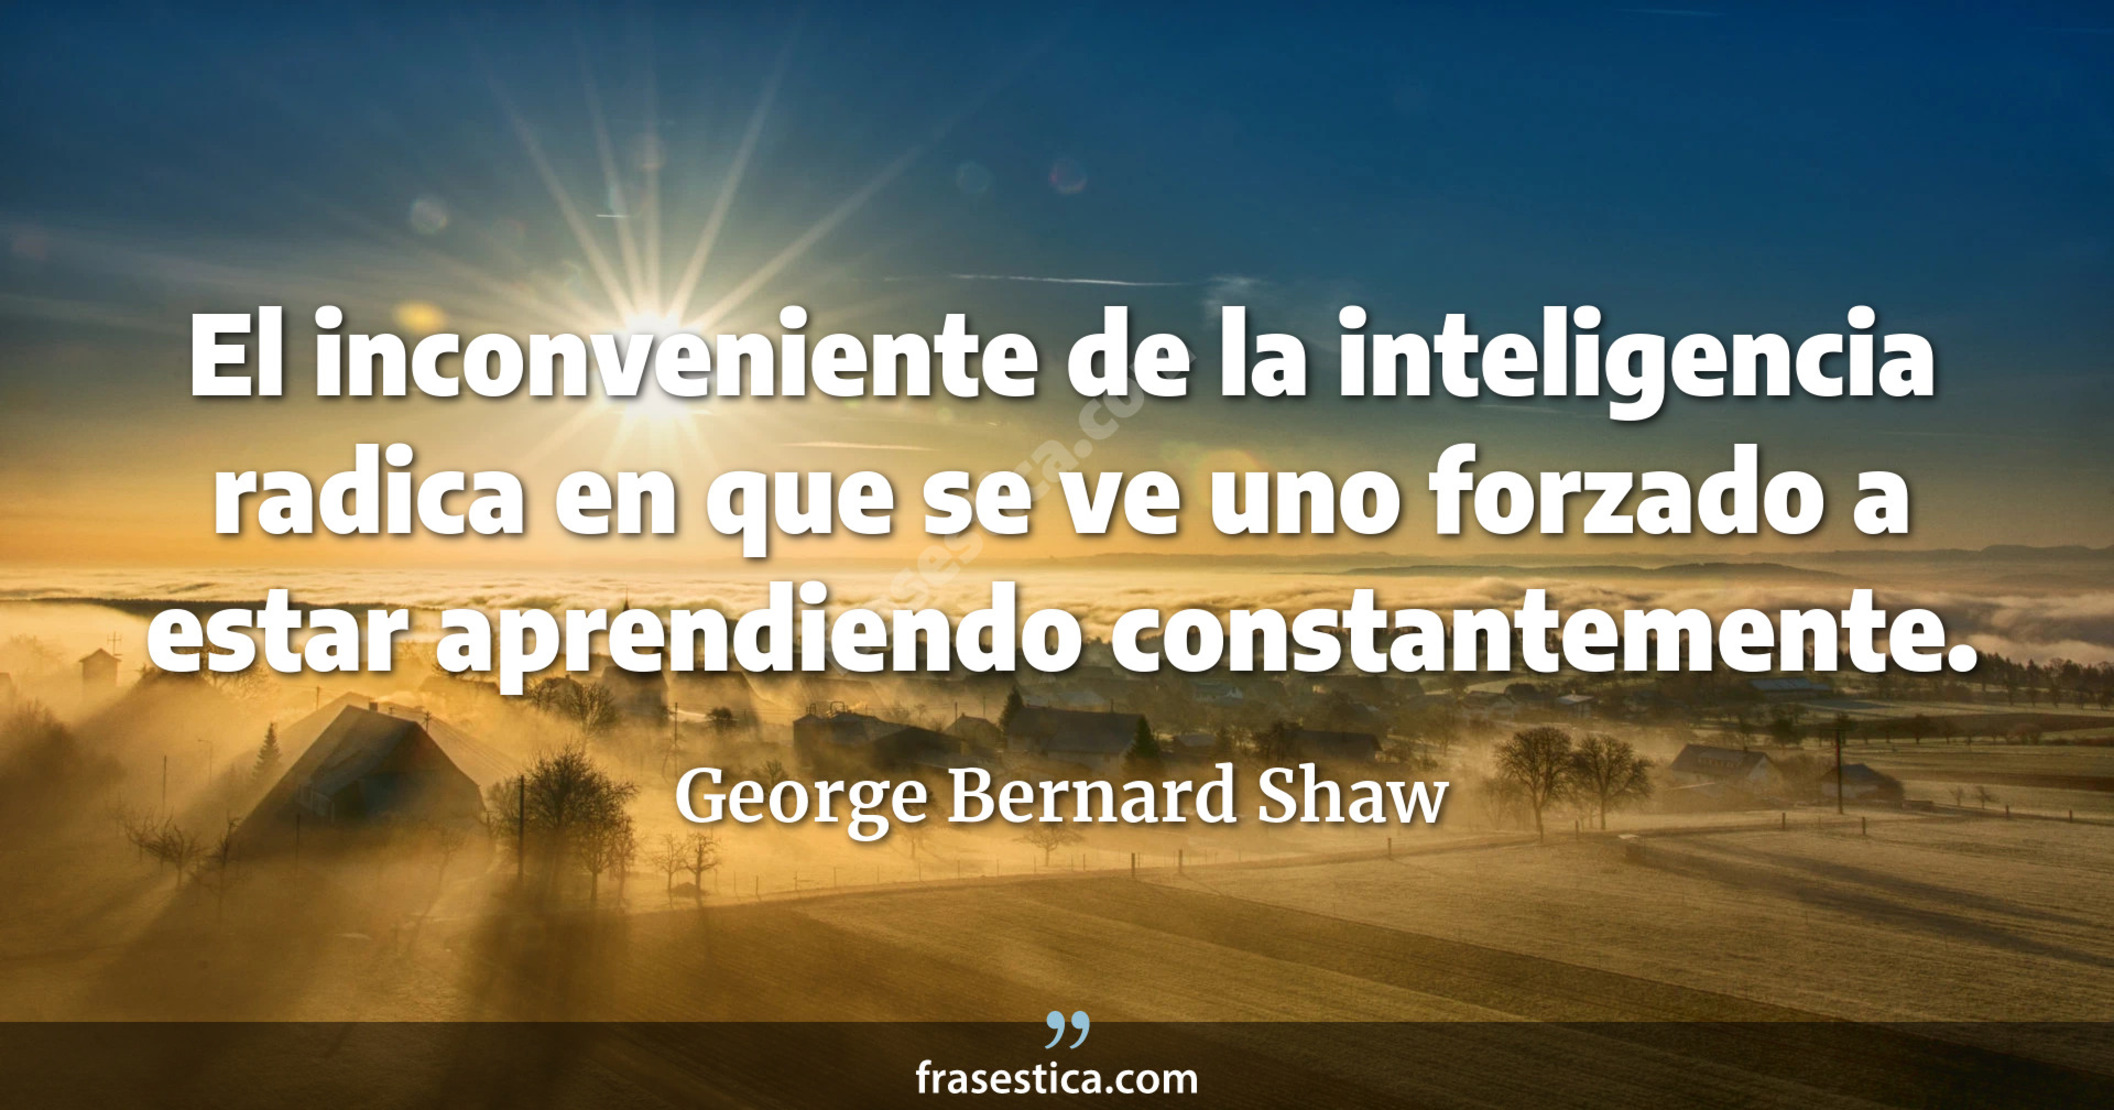 El inconveniente de la inteligencia radica en que se ve uno forzado a estar aprendiendo constantemente. - George Bernard Shaw